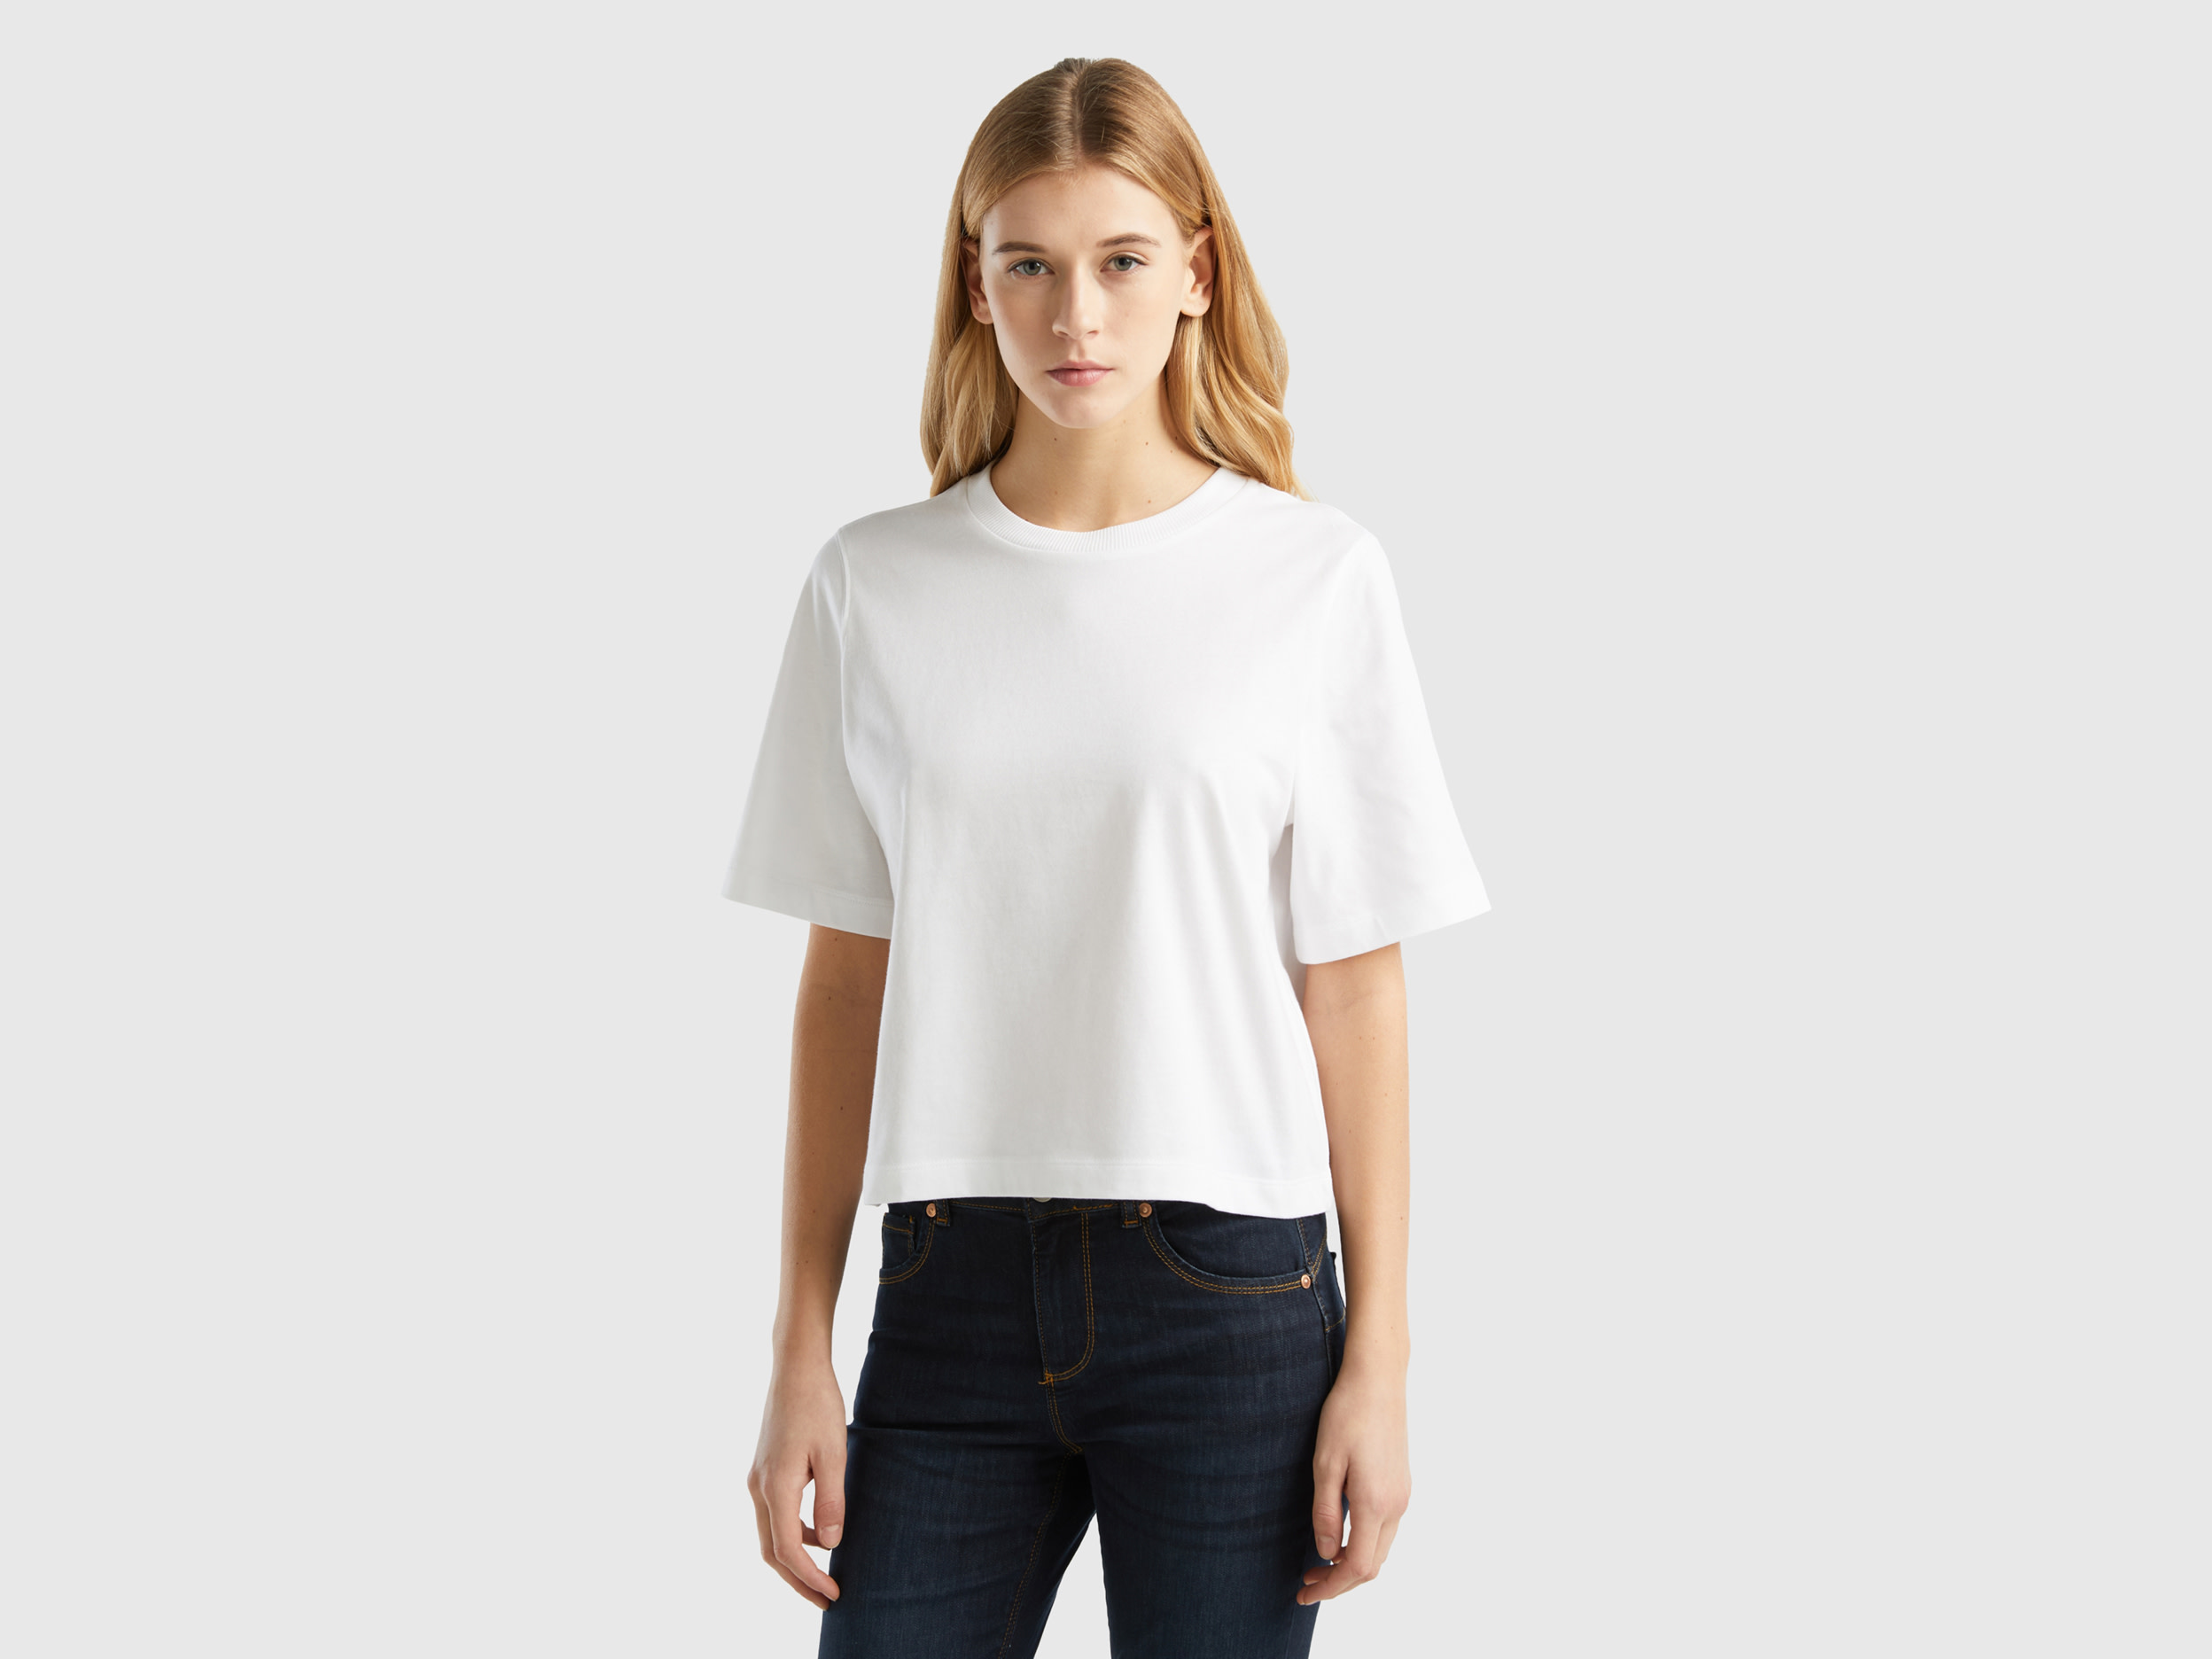 Benetton, 100% Cotton Boxy Fit T-shirt, size M, White, Women